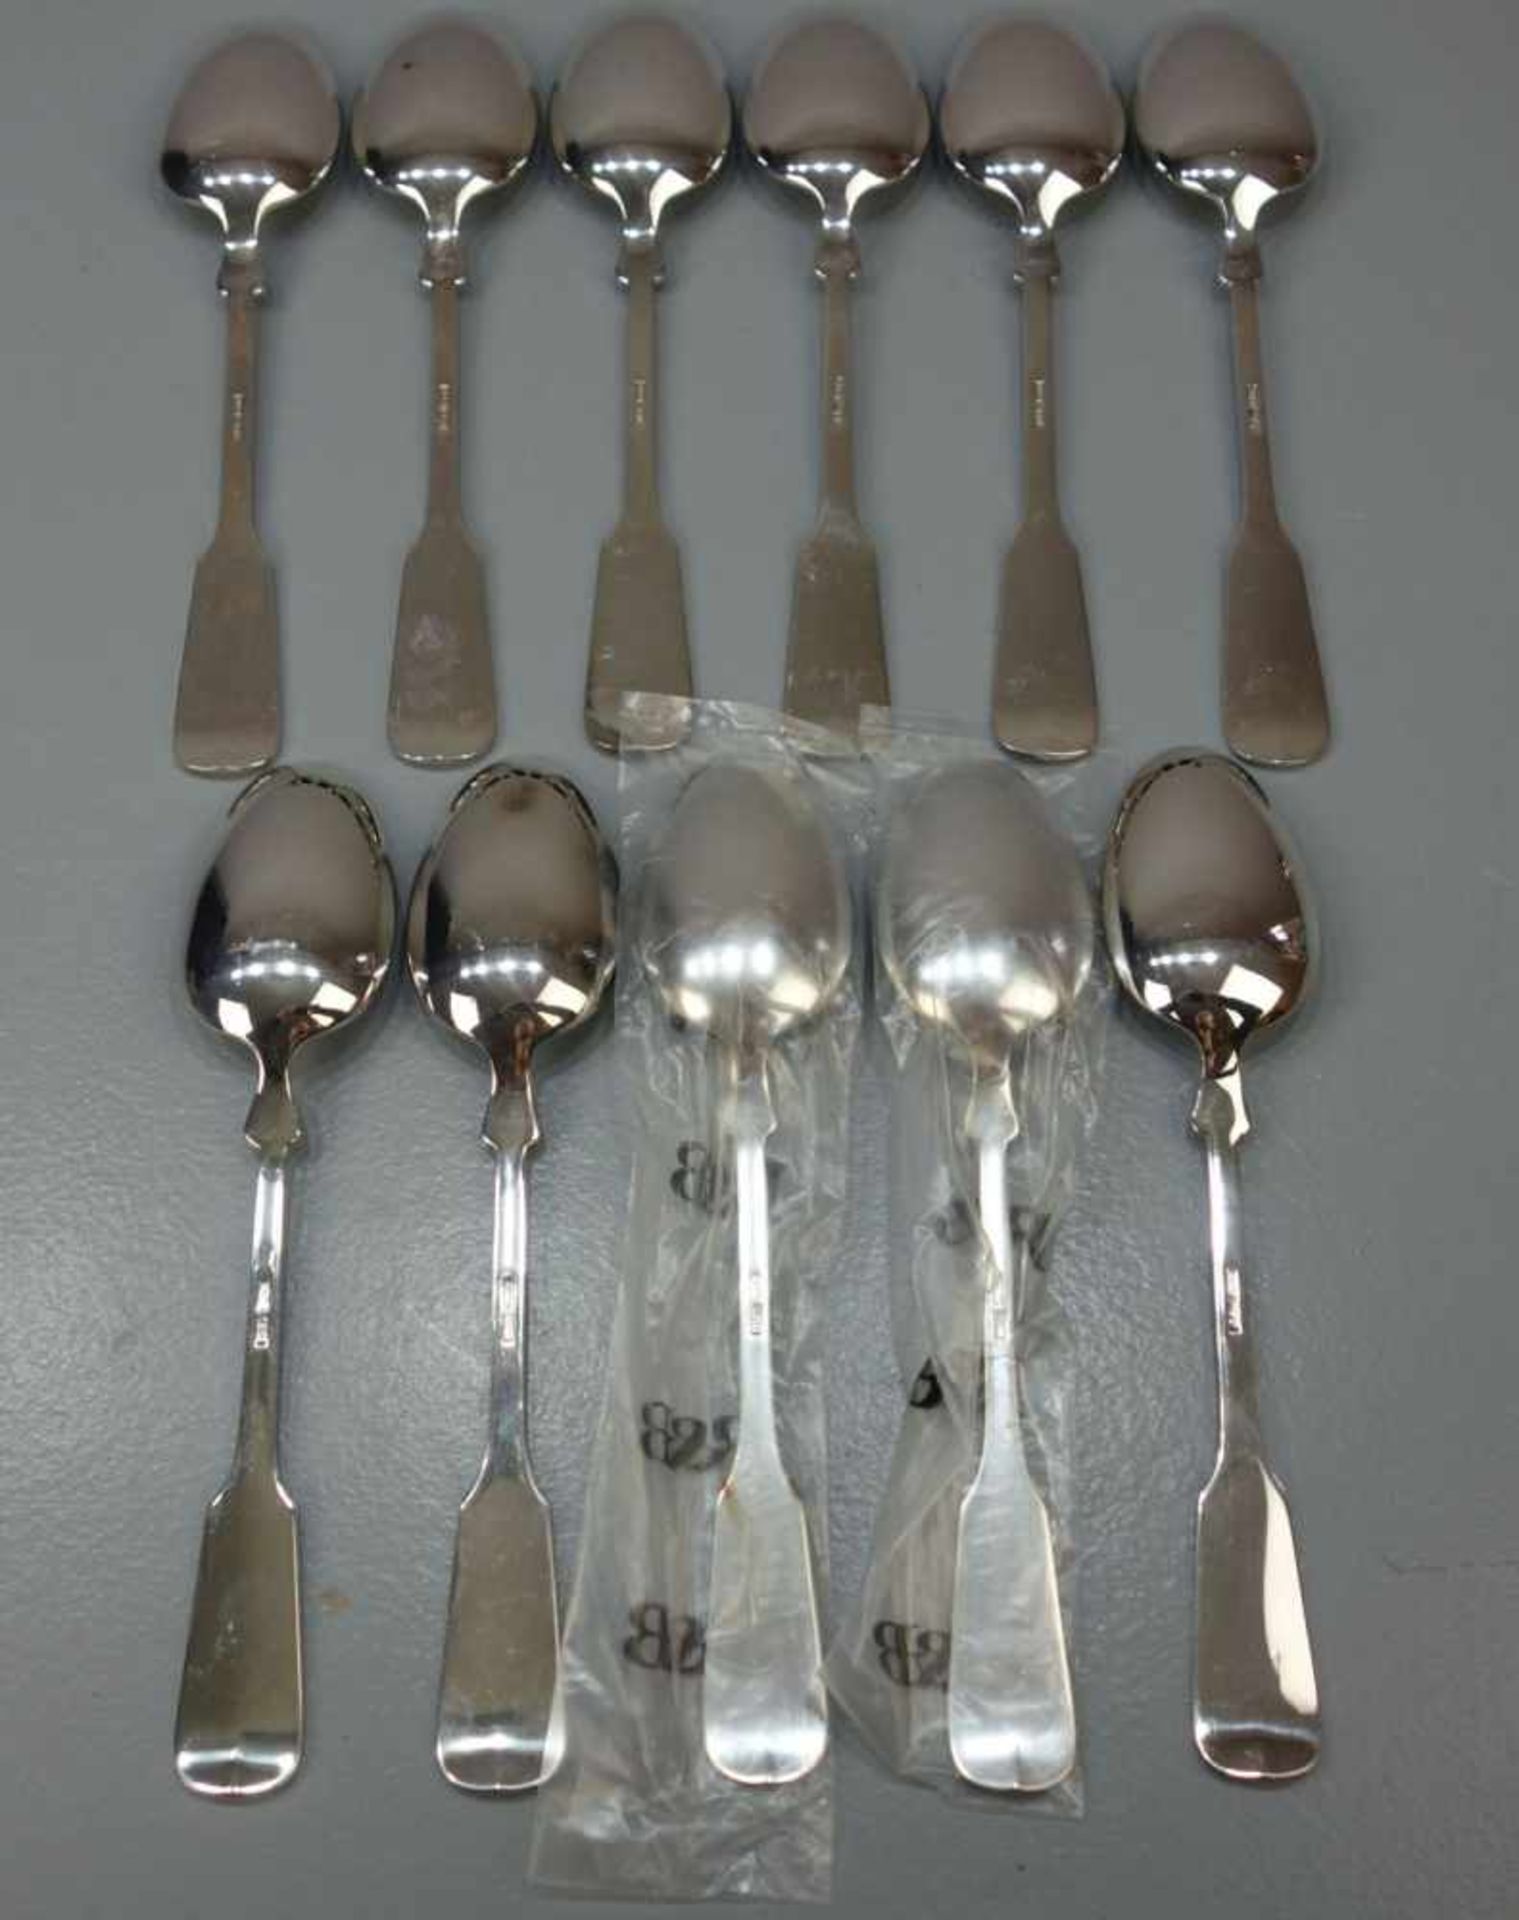 BESTECK: 11 SPEISELÖFFEL / MENÜLÖFFEL / plated spoons, 20. Jh., versilbertes Metall / 150er Auflage. - Image 2 of 3